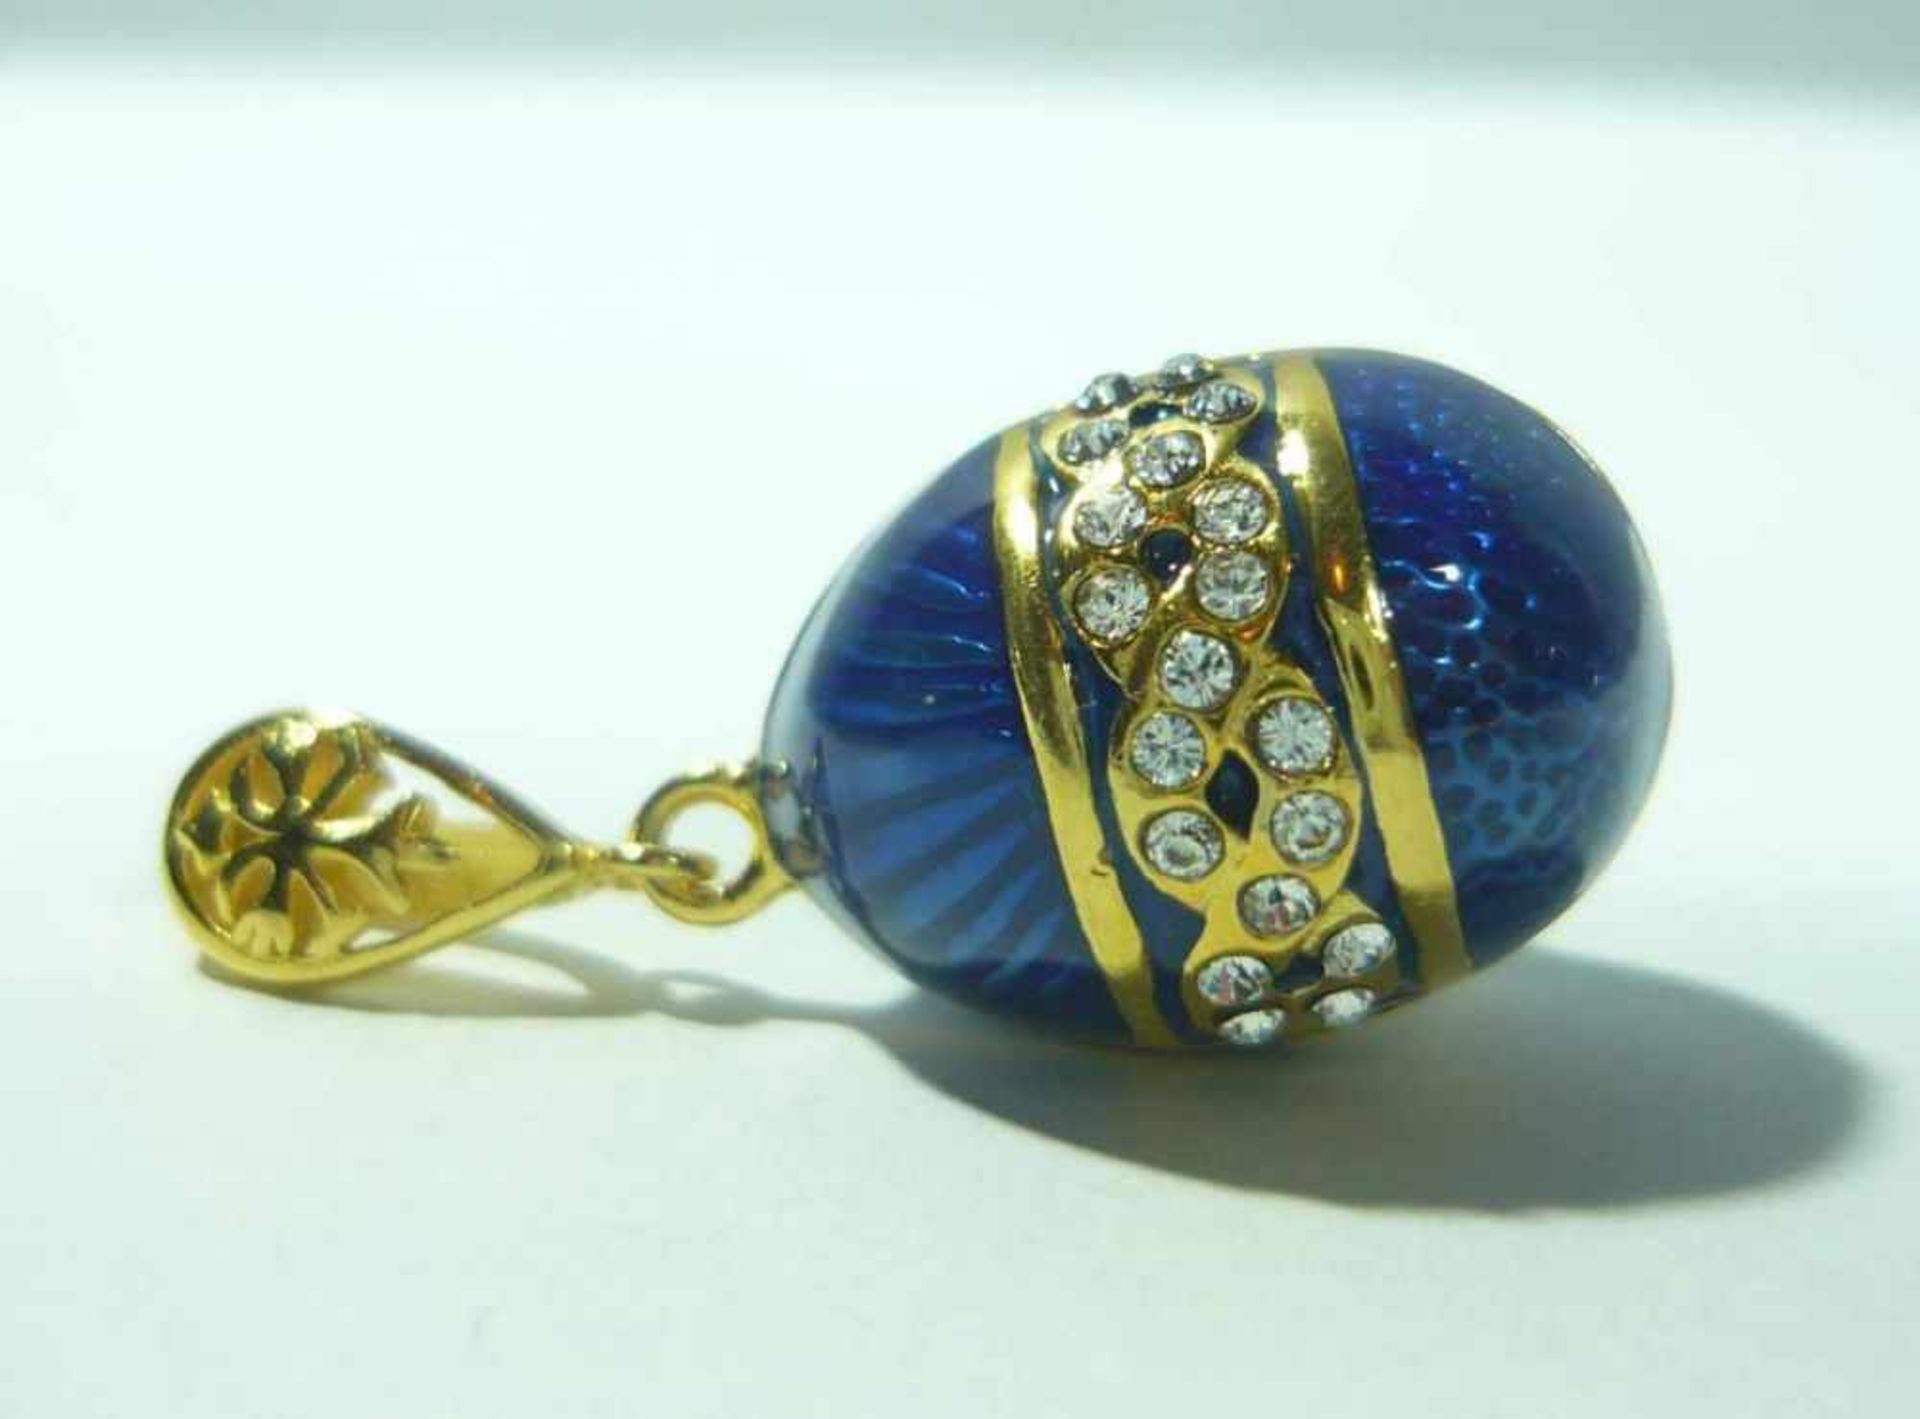 Blaues Ei mit umlaufender Verzierung. Kettenanhänger in russischem Faberge-Stil. 925 Sterling